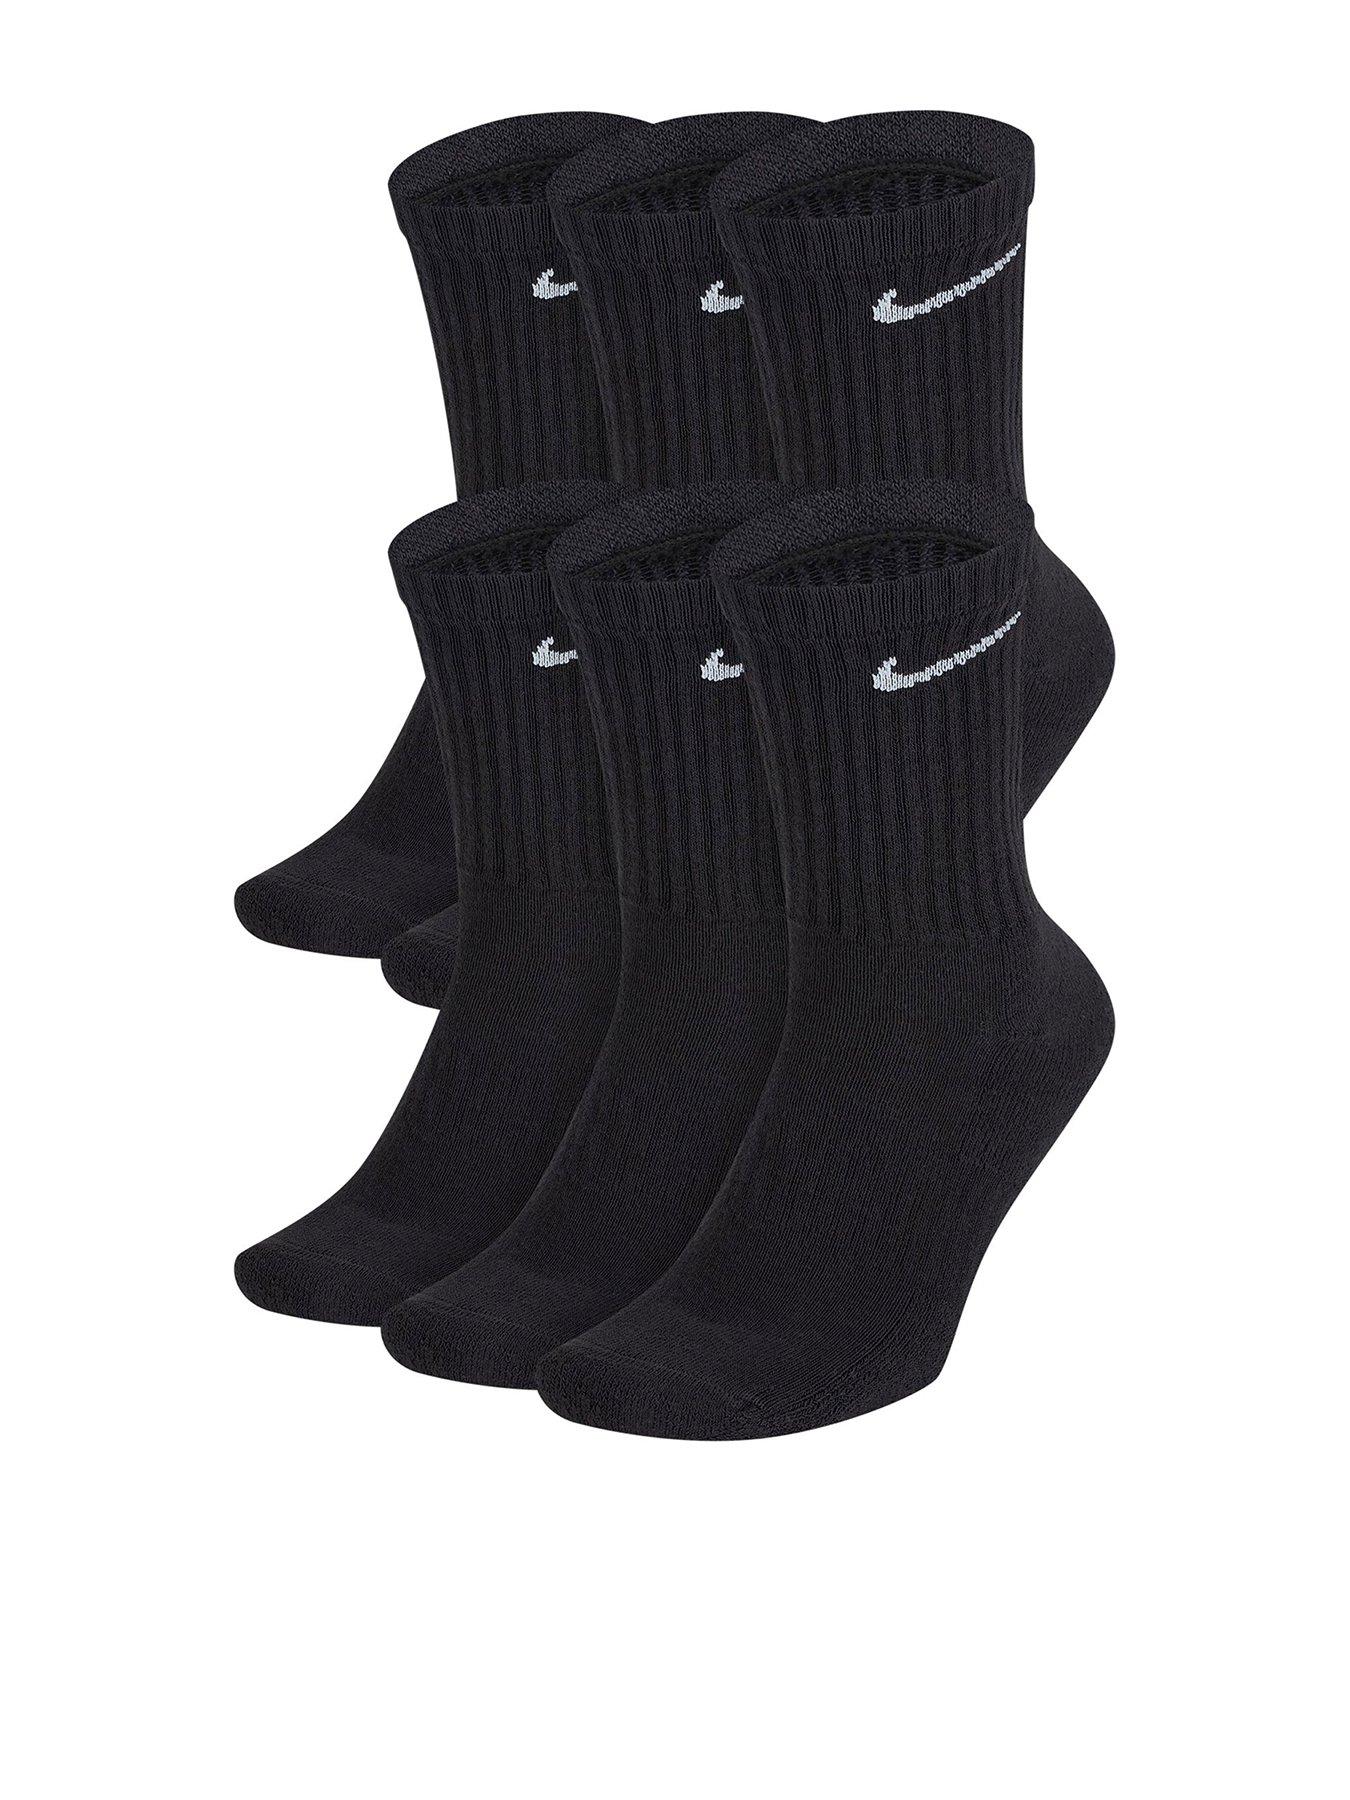 & socks | Men | Nike | www.very.co.uk